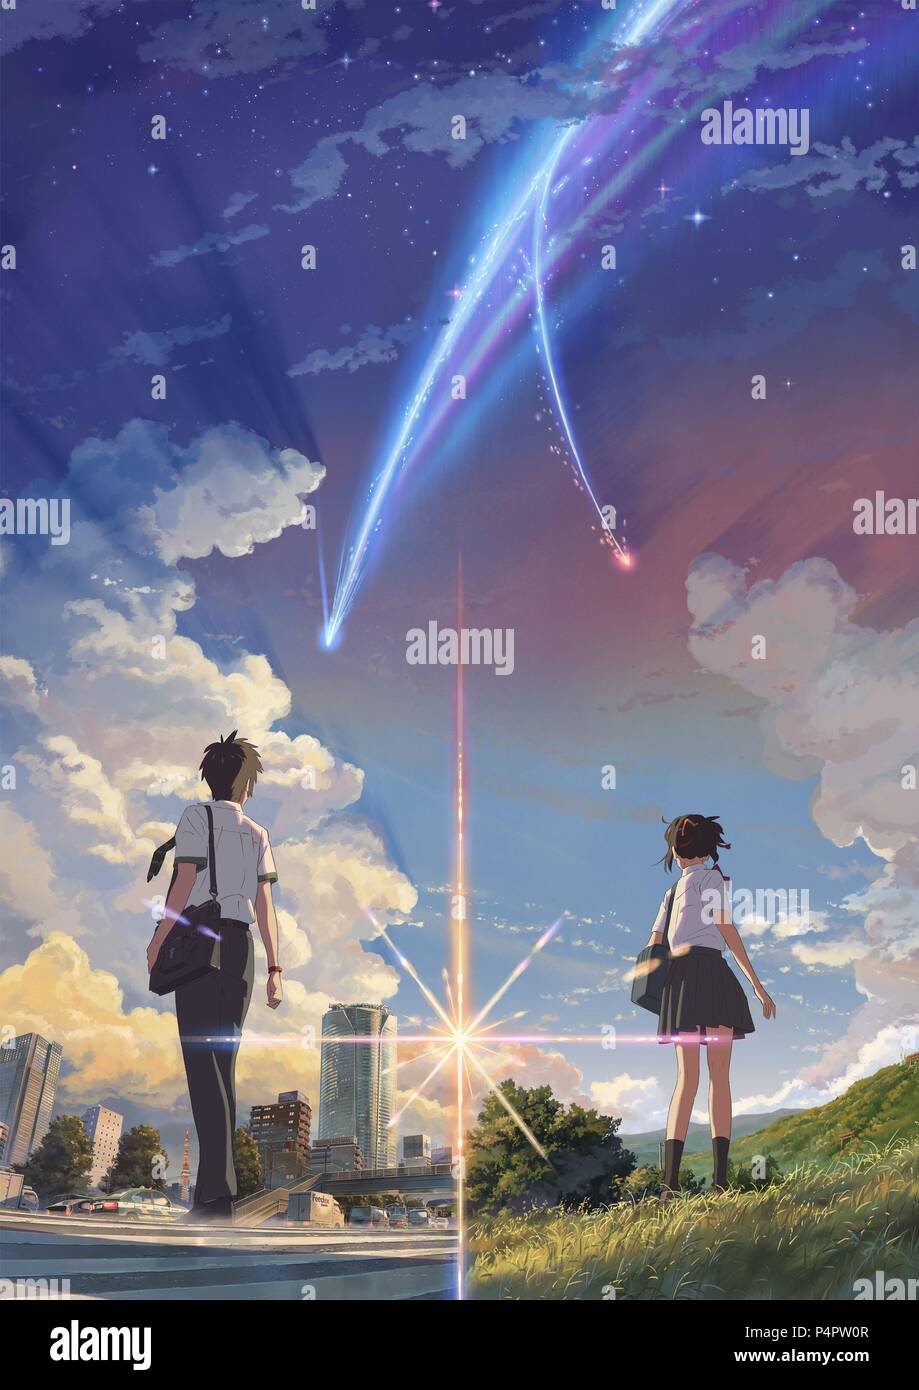 Makoto Shinkai Kimi No Na Wa Wallpaper Full HD Free Download